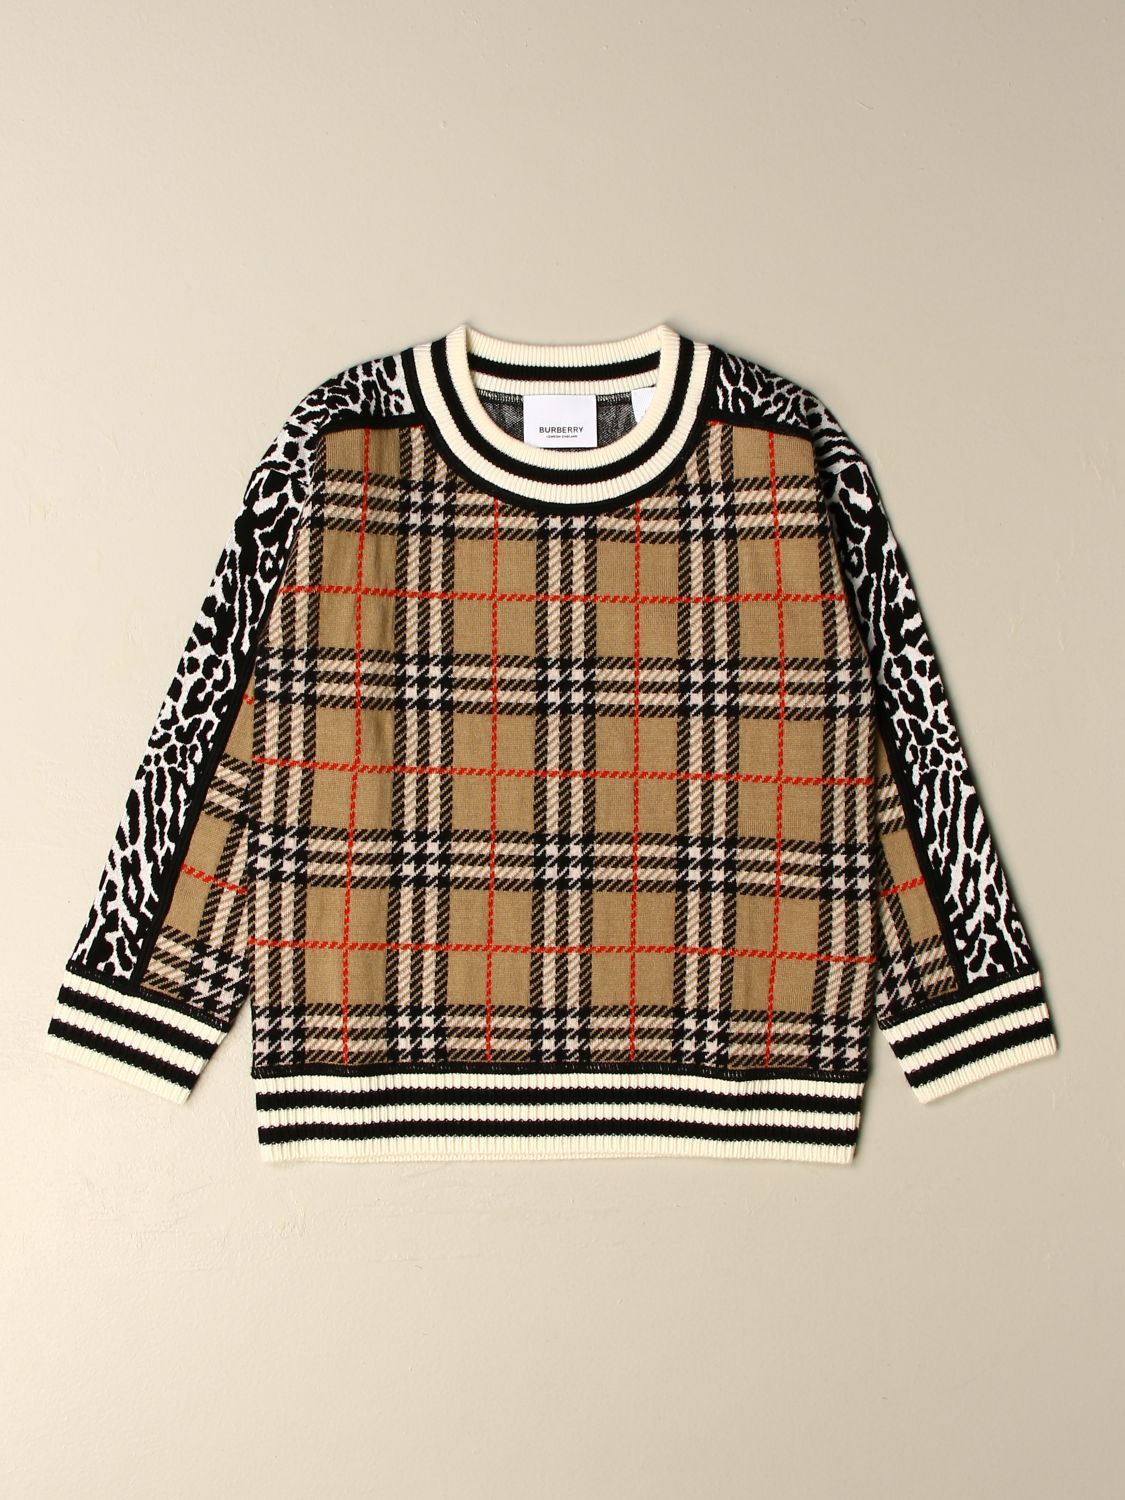 burberry multicolor sweater